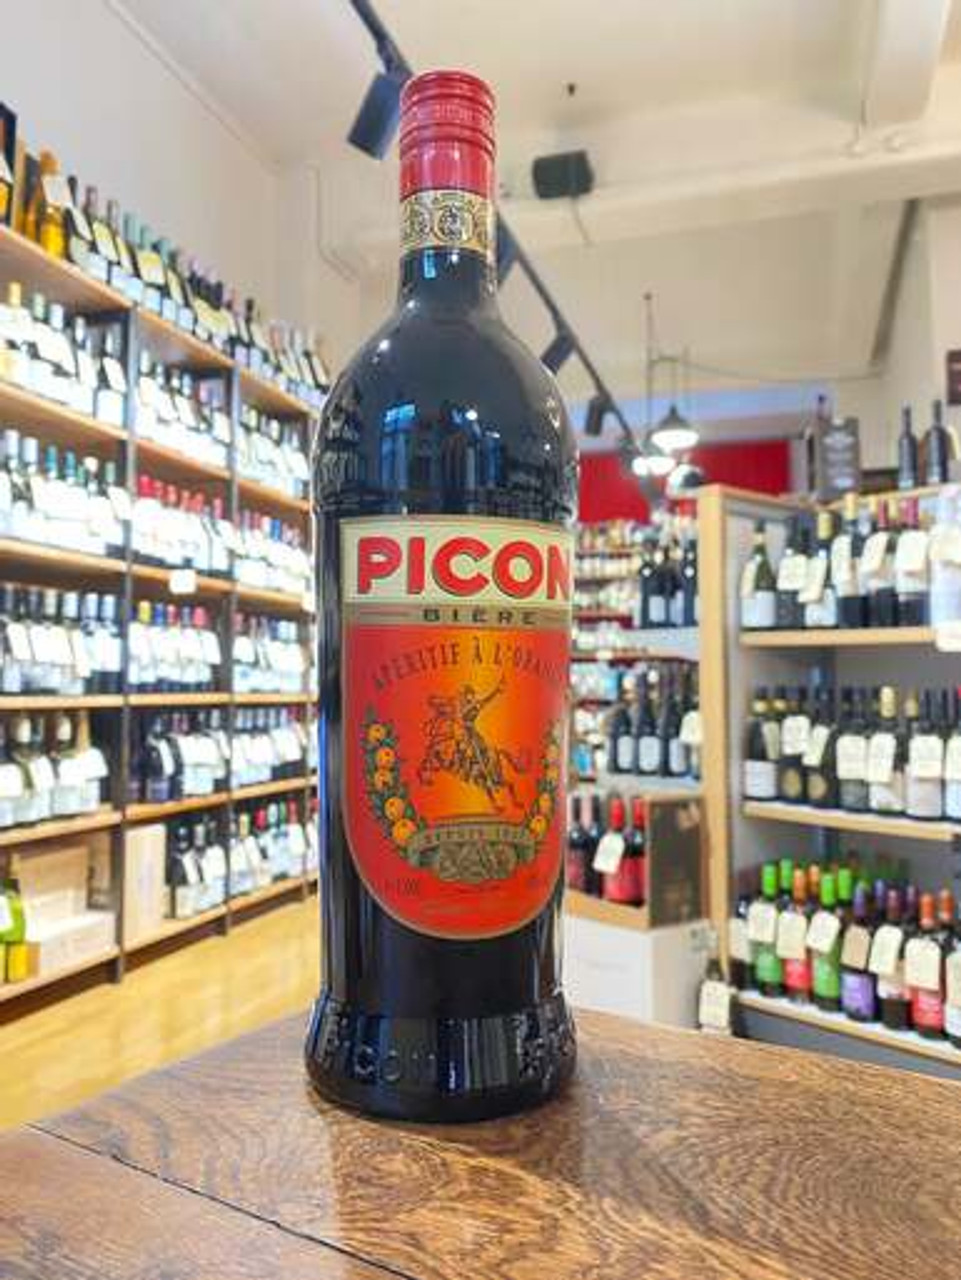 Picon Bière French Liquor Review 